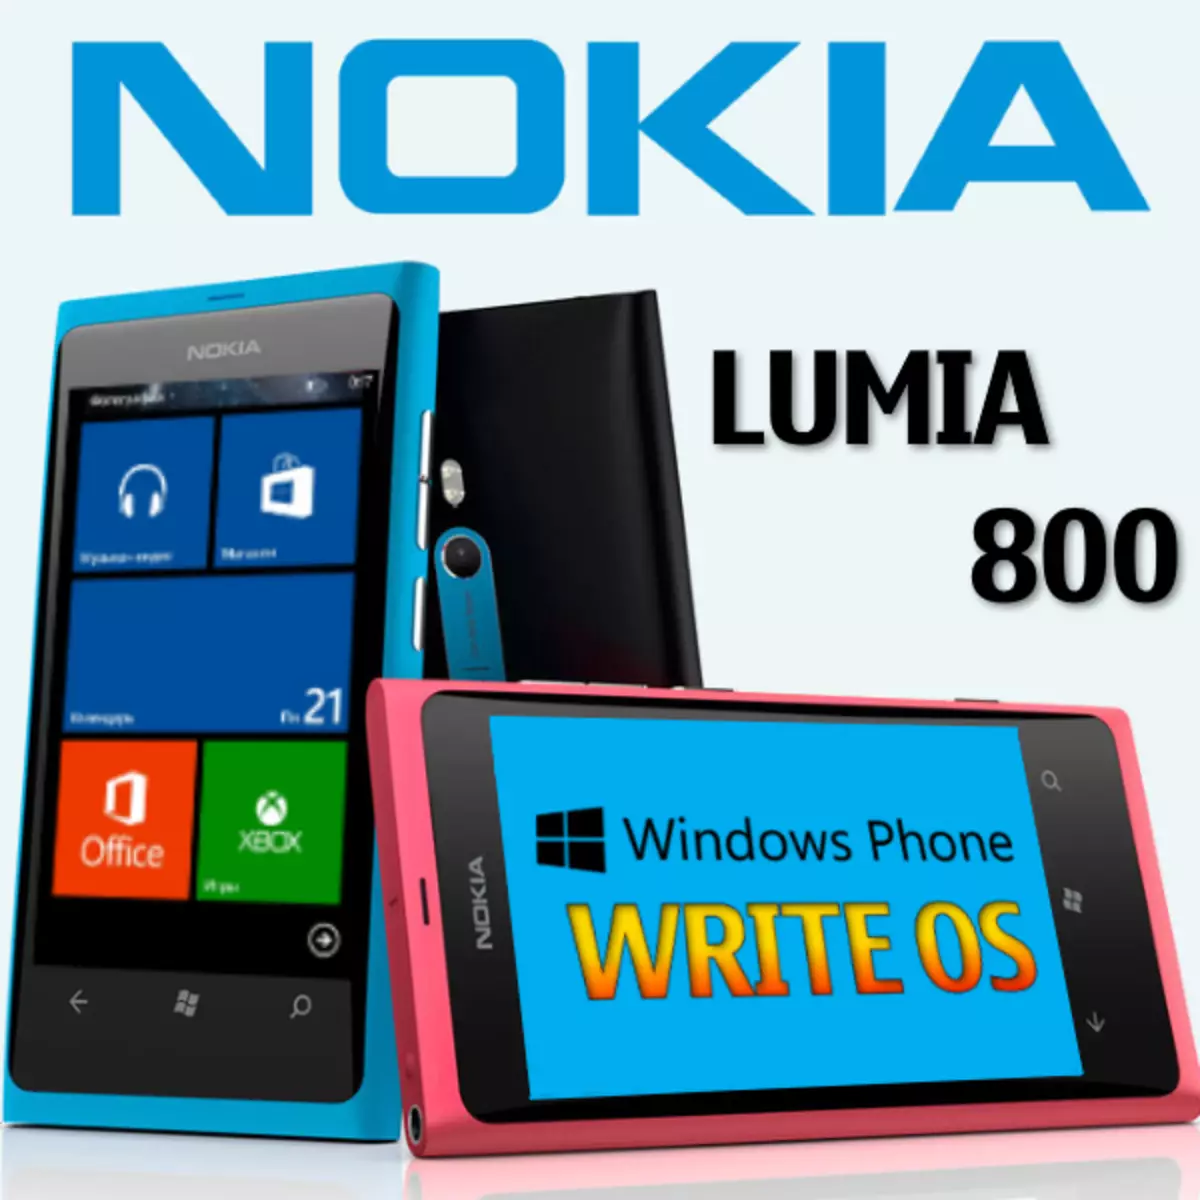 Lumia 800 cadarnwedd